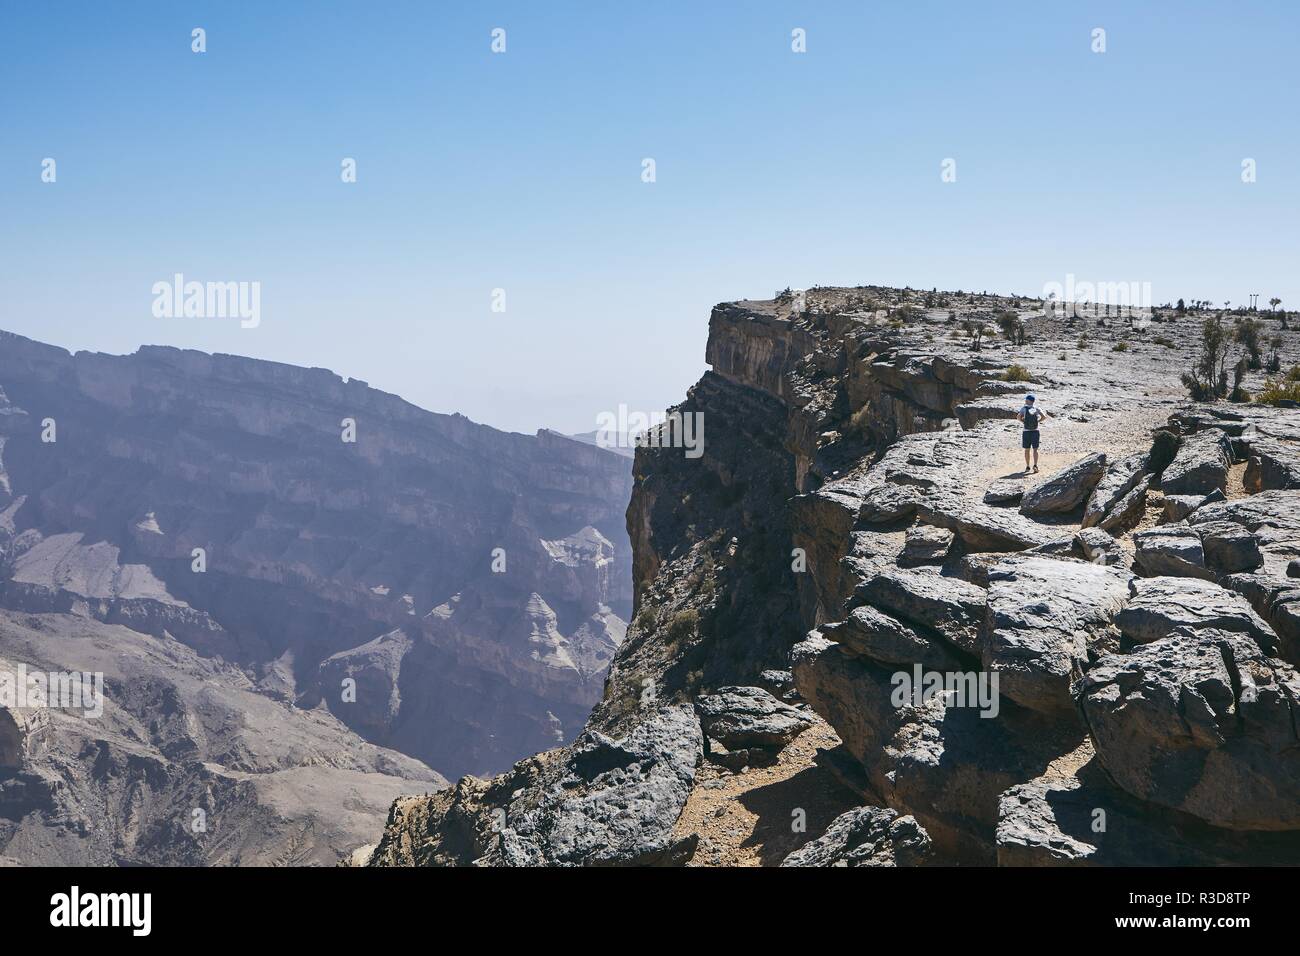 Grand Canyon of Oman. Tourist walking on the edge of cliff. Mountain range Jebel Akhdar. Stock Photo